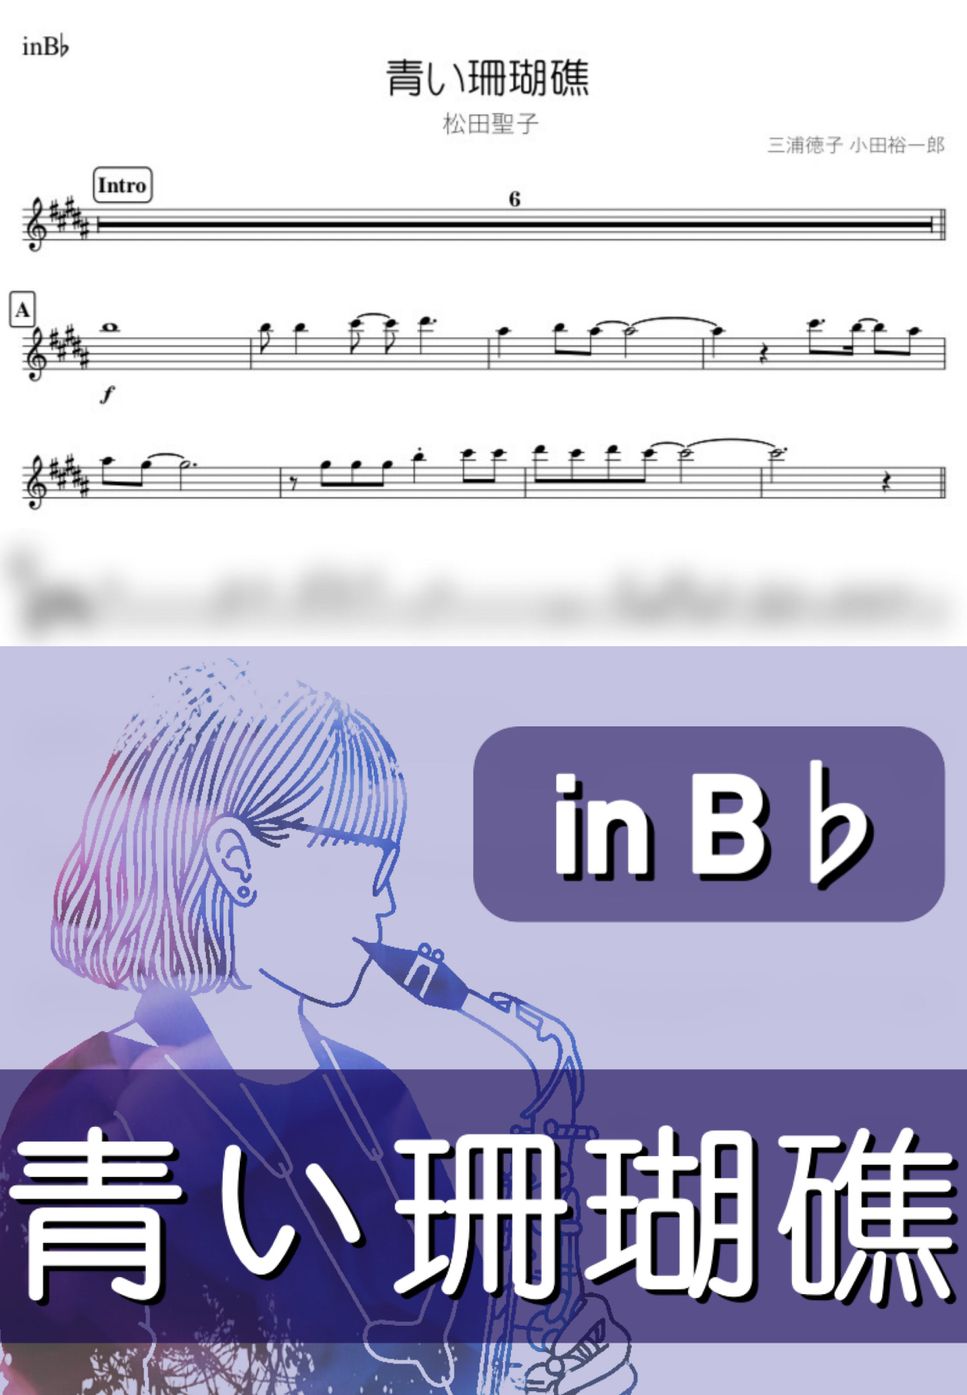 松田聖子 - 青い珊瑚礁 (B♭) by kanamusic